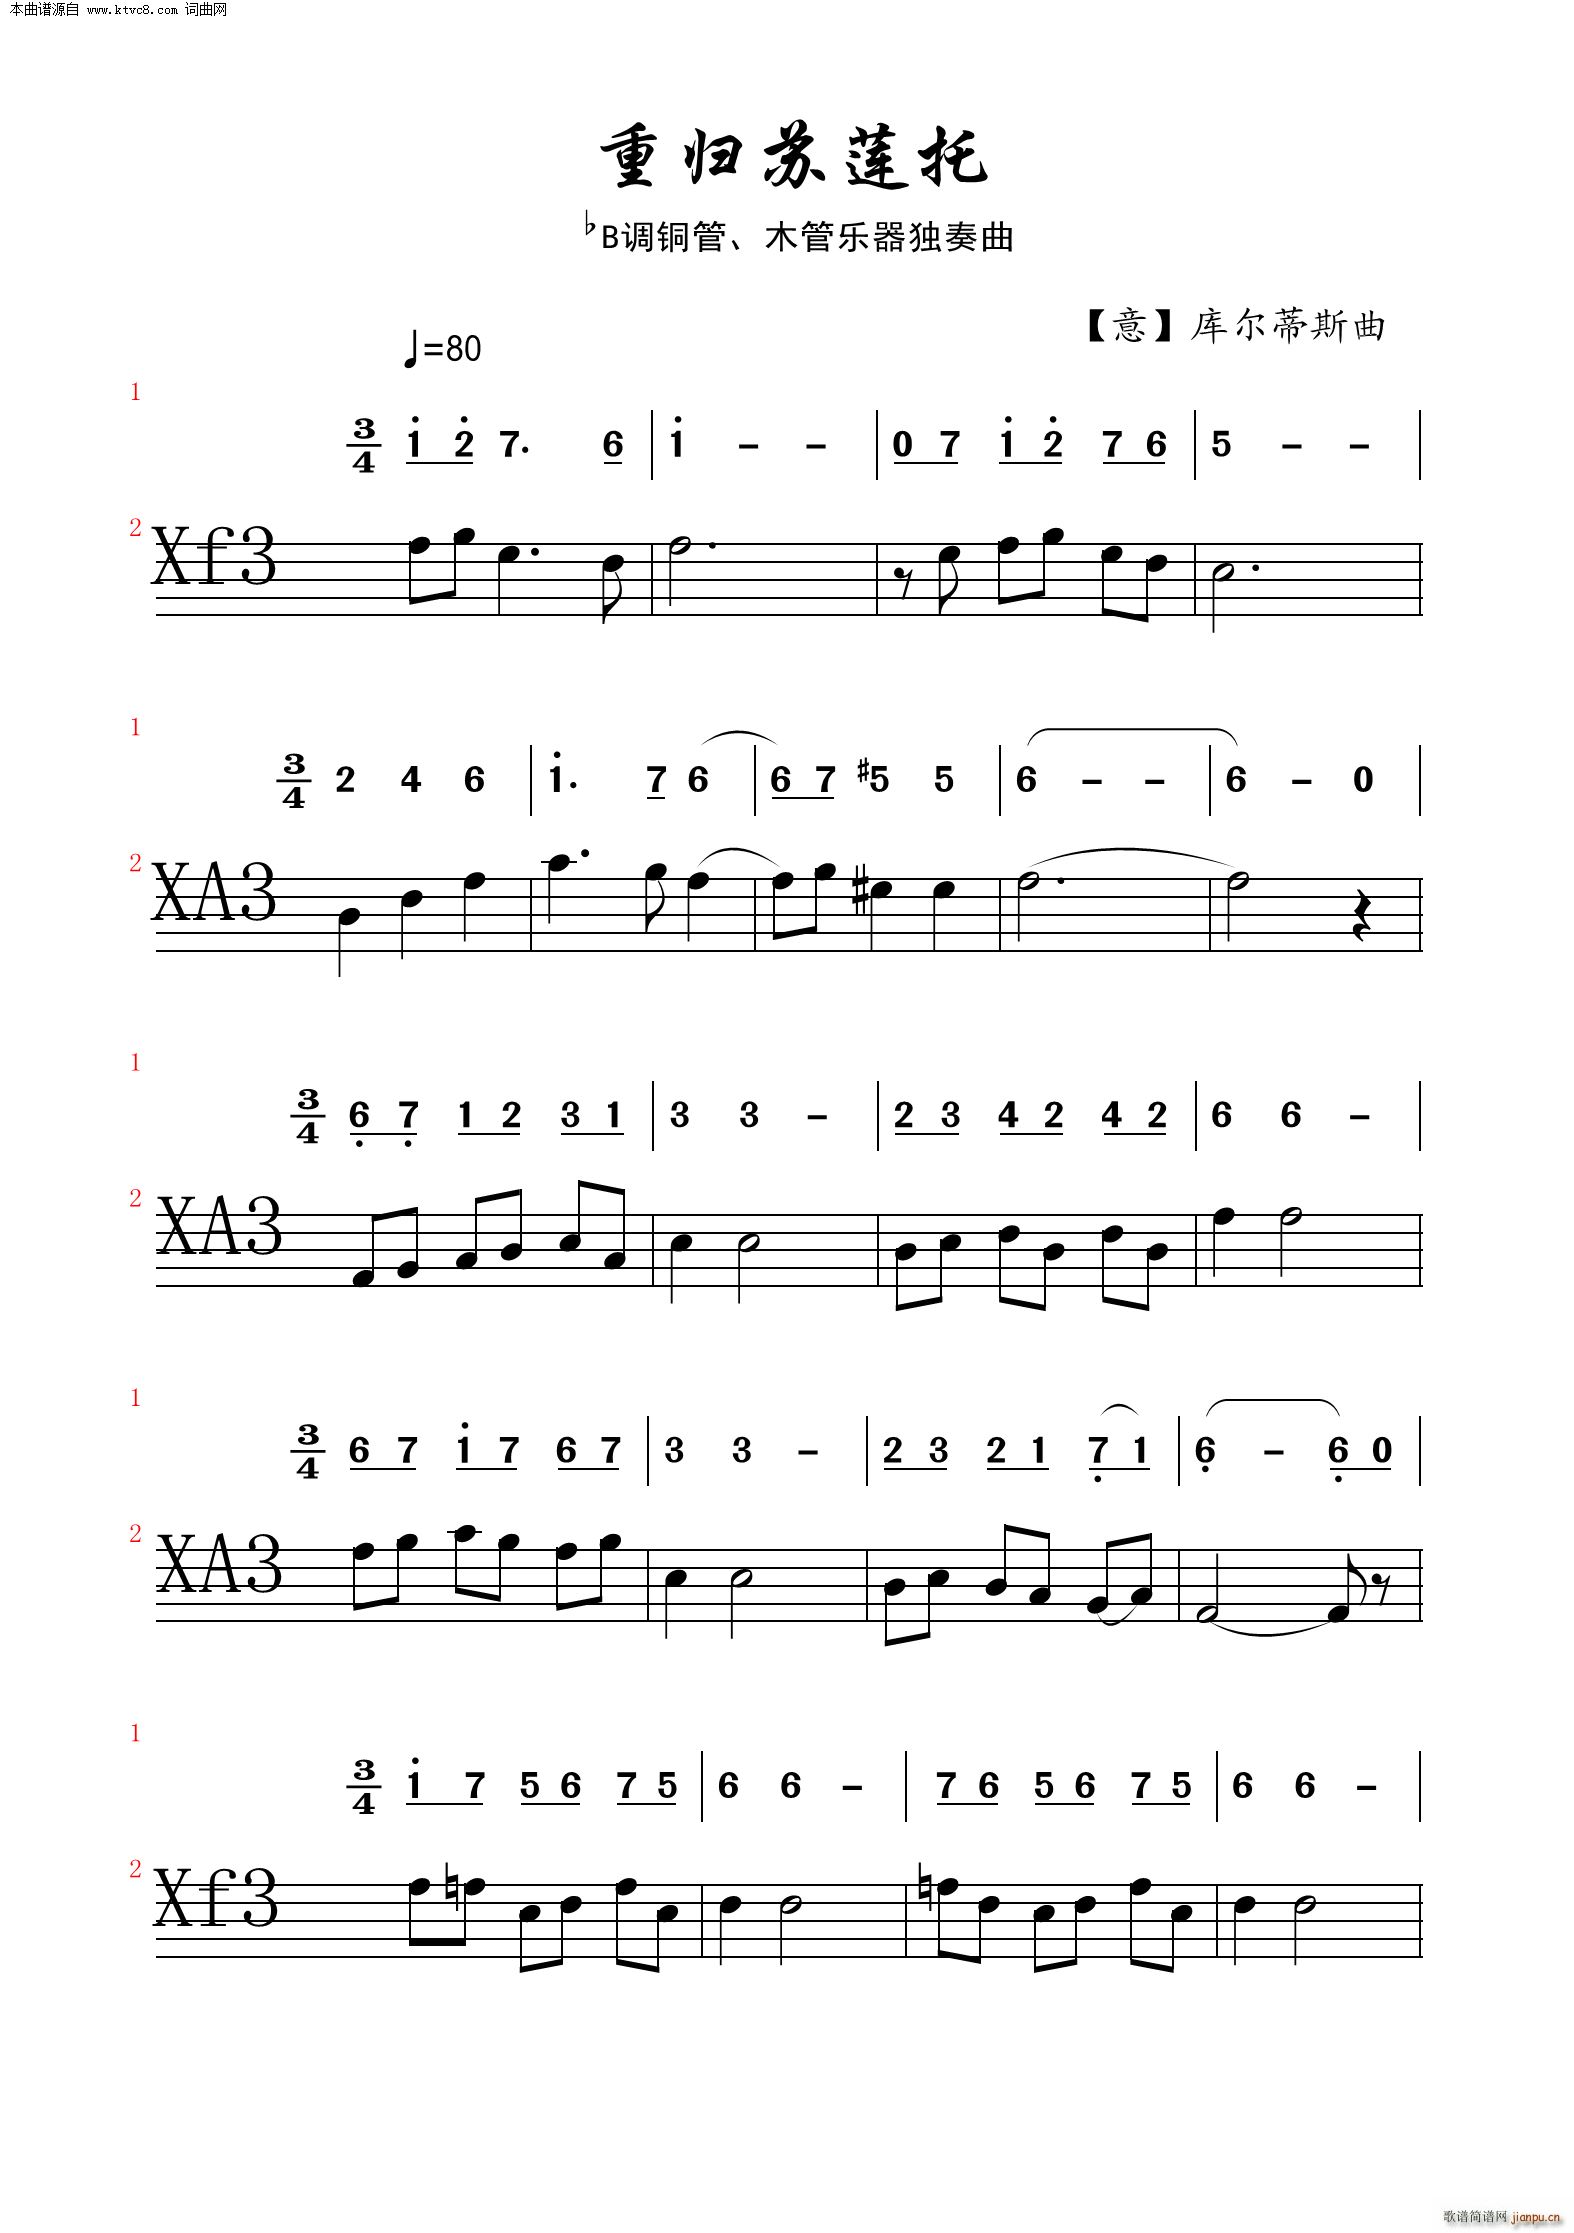 重归苏莲托 铜管 木管乐器独奏曲(总谱)1